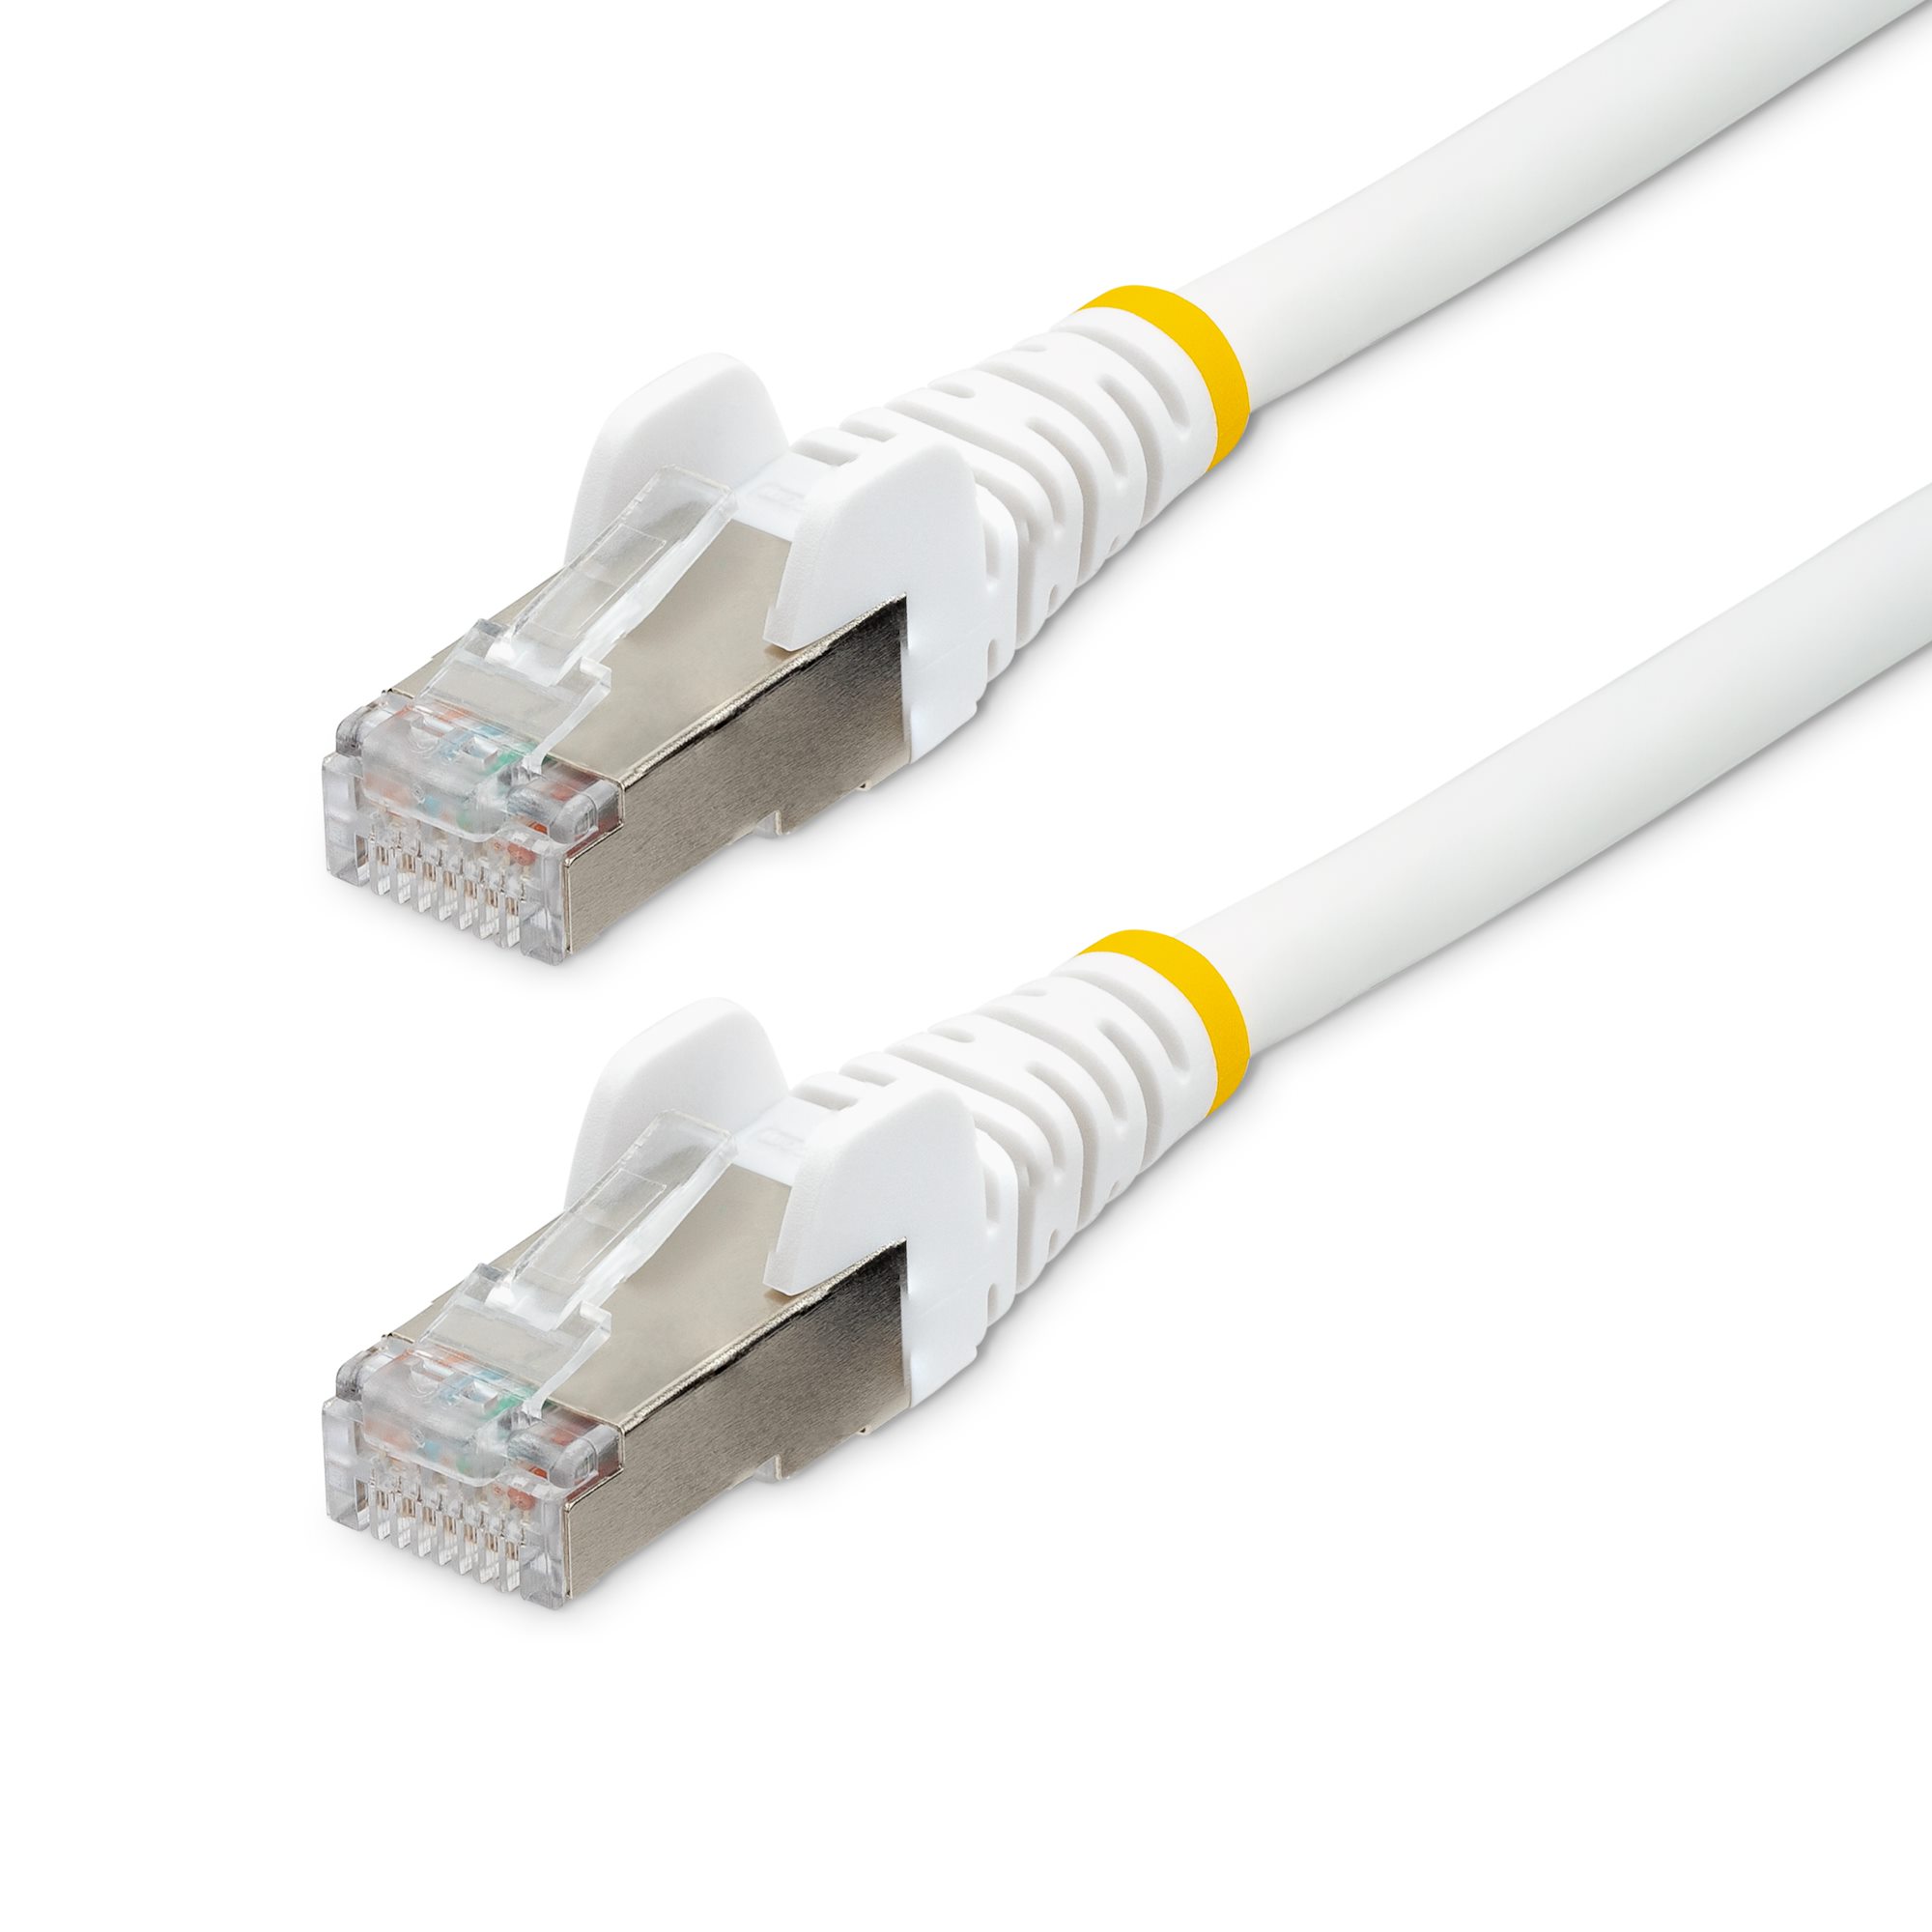 10m LSZH CAT6a Ethernet - White - Cat 6a Cables | StarTech.com Spain